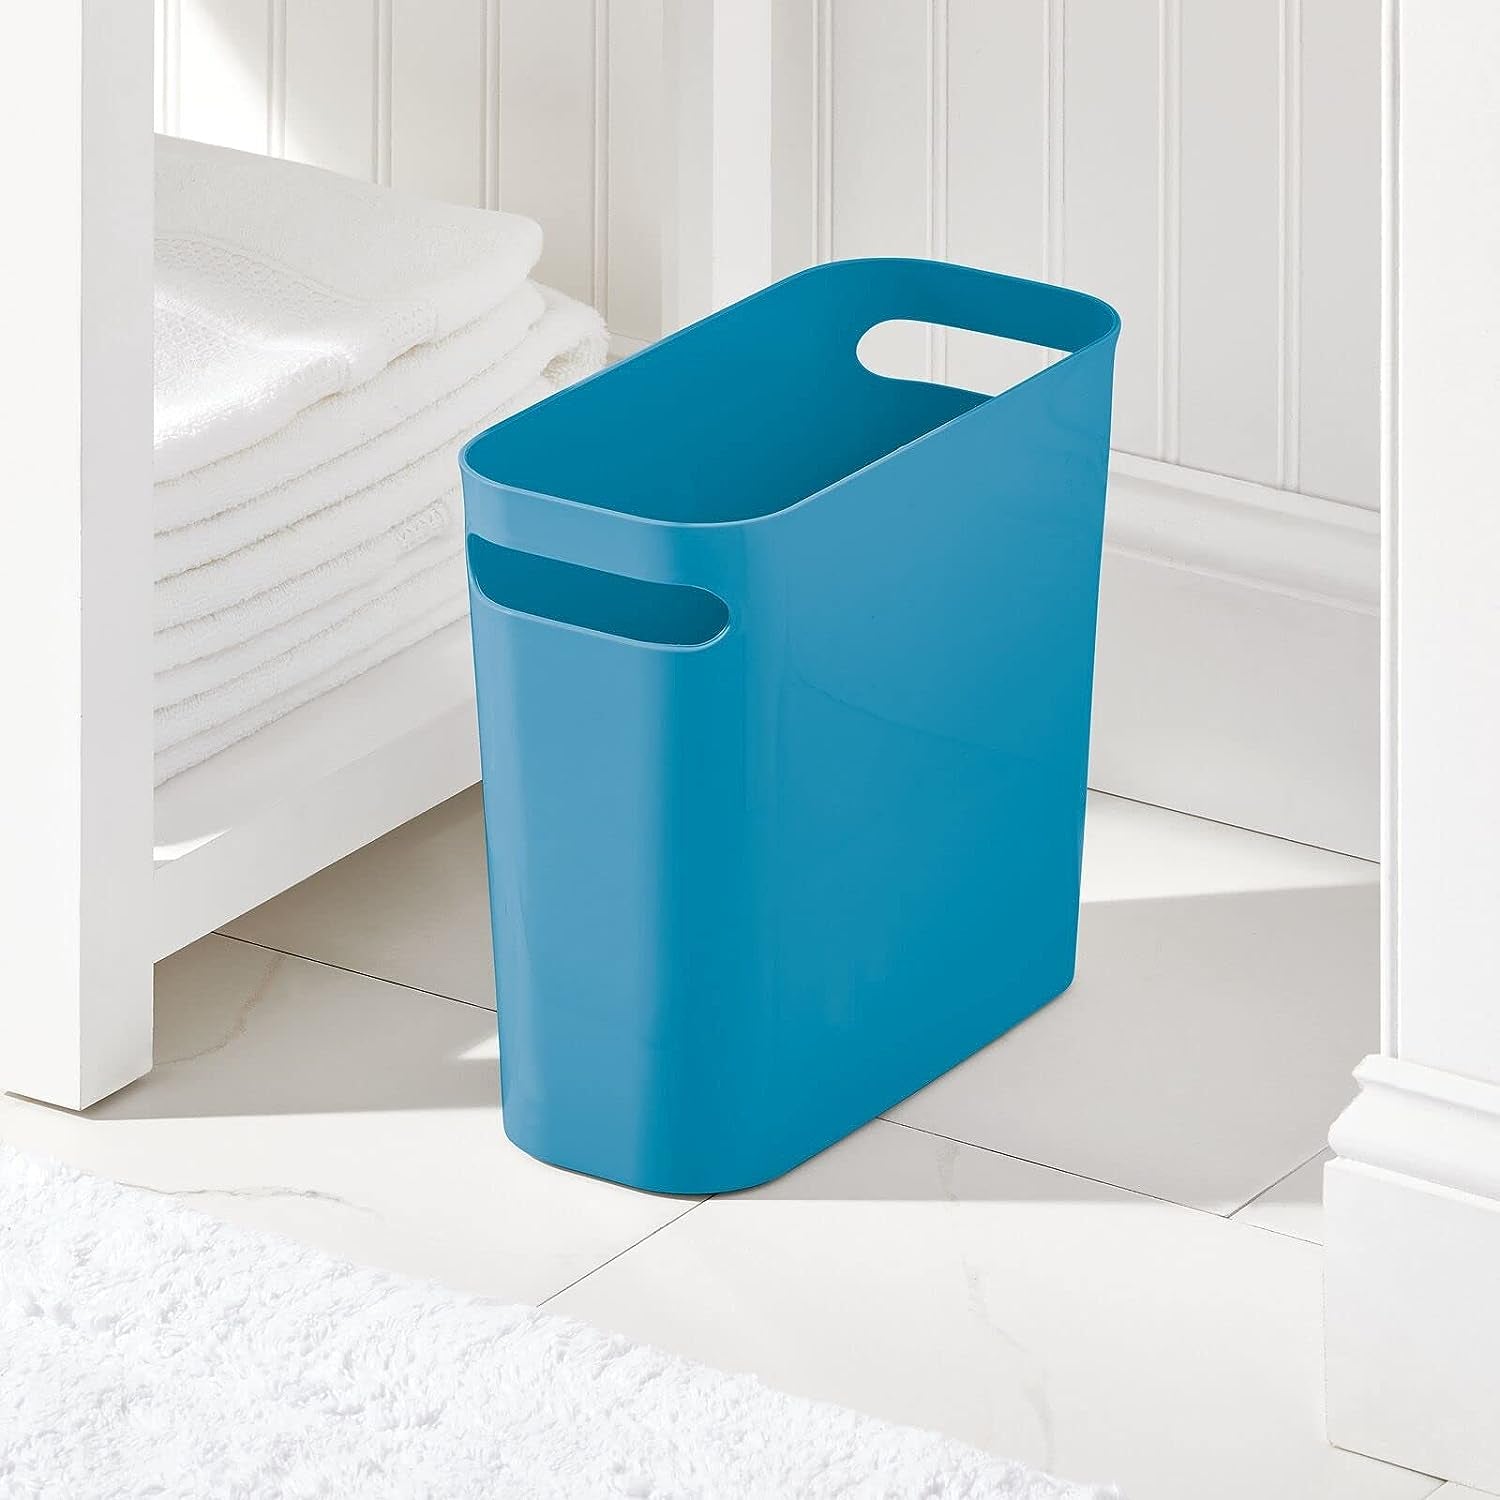 mDesign Plastic Small Trash Can, 1.5 Gallon, Cornflower Blue